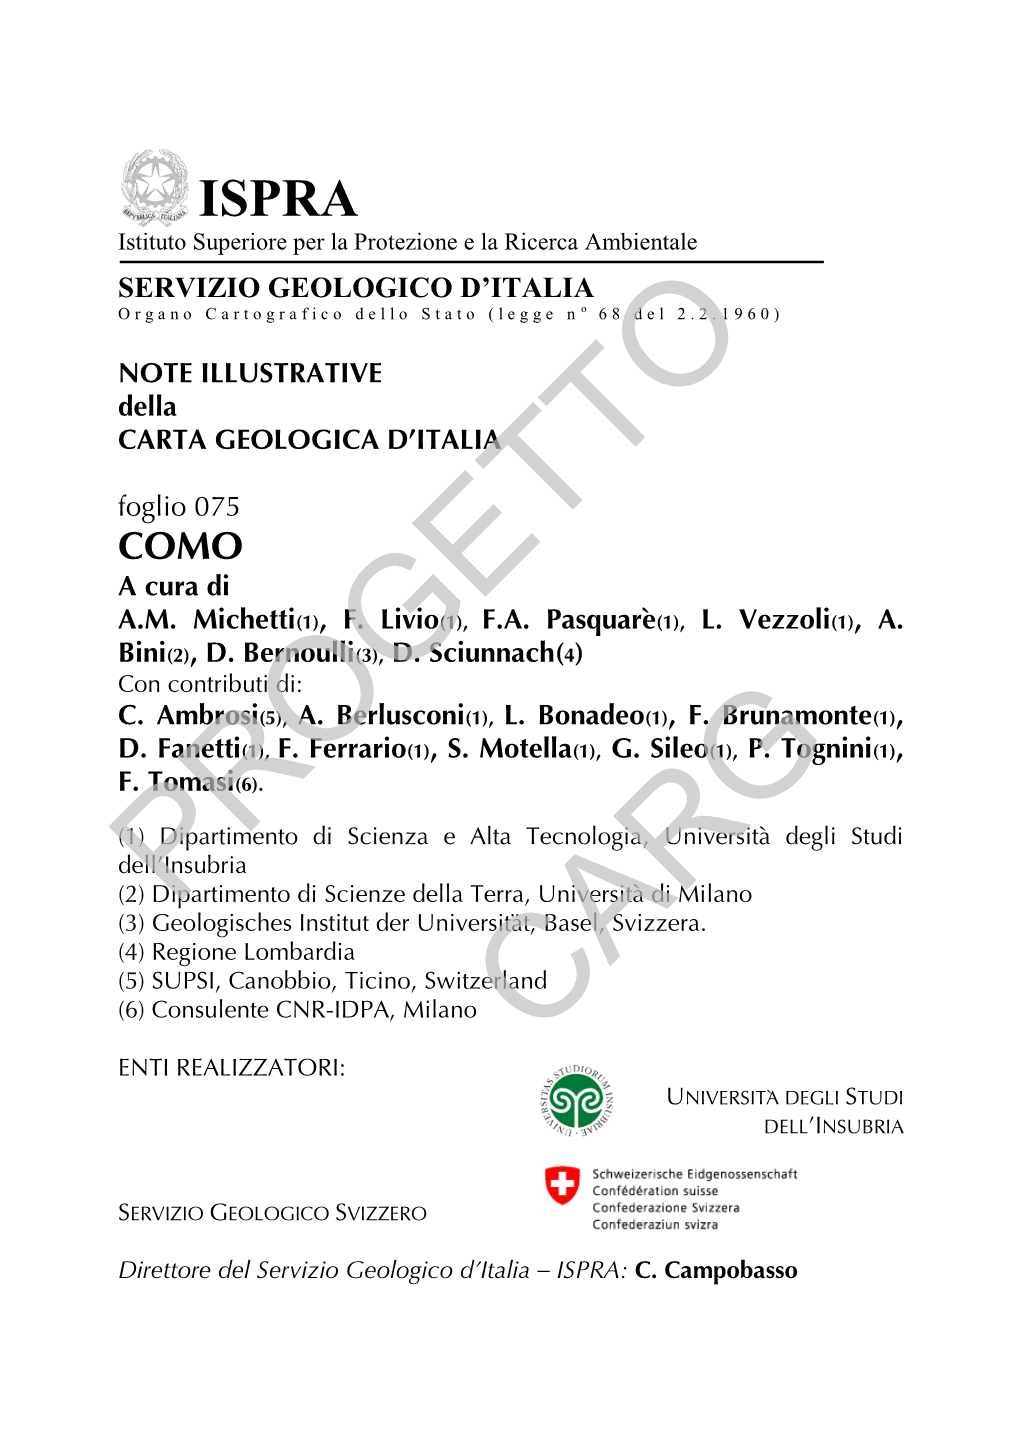 NOTE ILLUSTRATIVE Della CARTA GEOLOGICA D’ITALIA Foglio 075 COMO a Cura Di A.M